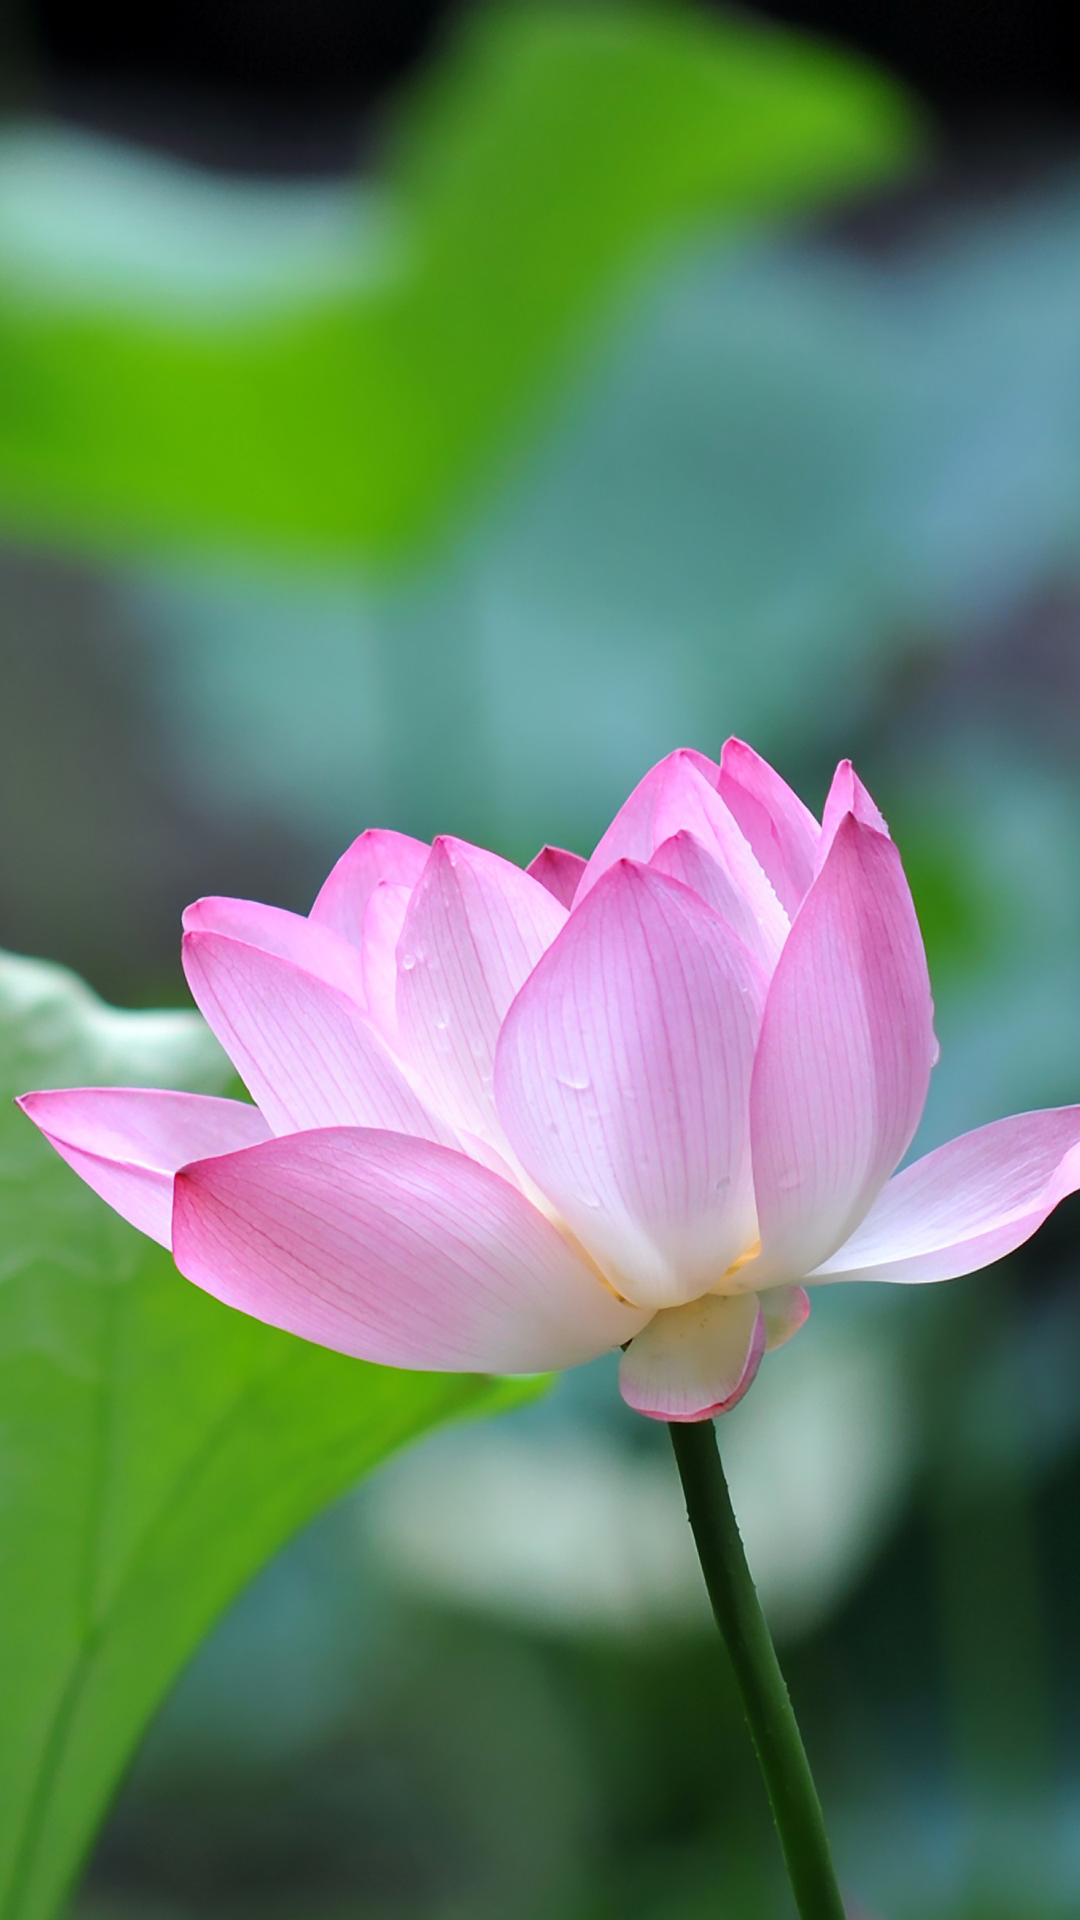 htc wallpaper free download,lotus,sacred lotus,flowering plant,petal,aquatic plant